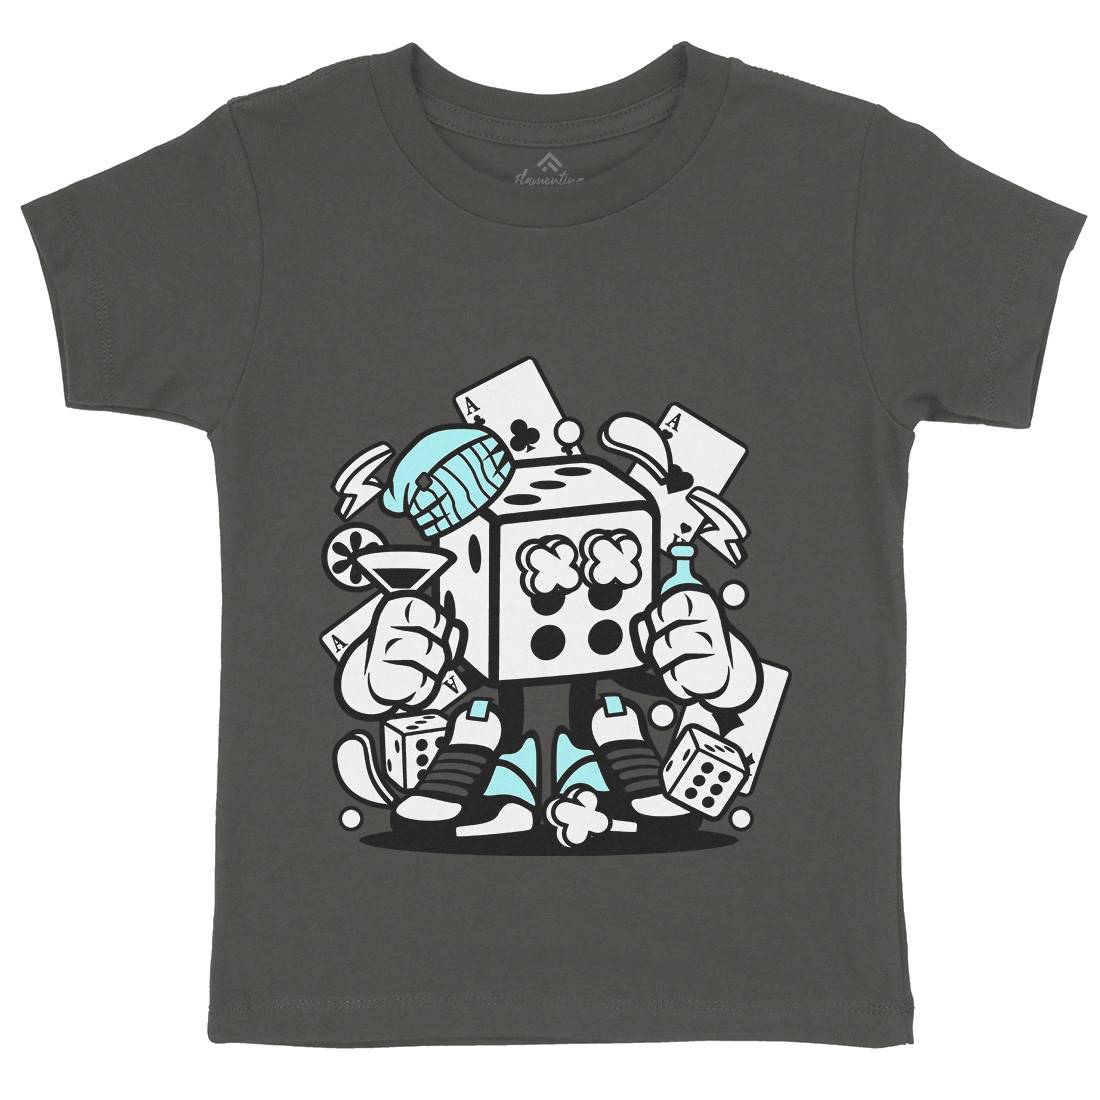 Dice Kids Crew Neck T-Shirt Retro C085